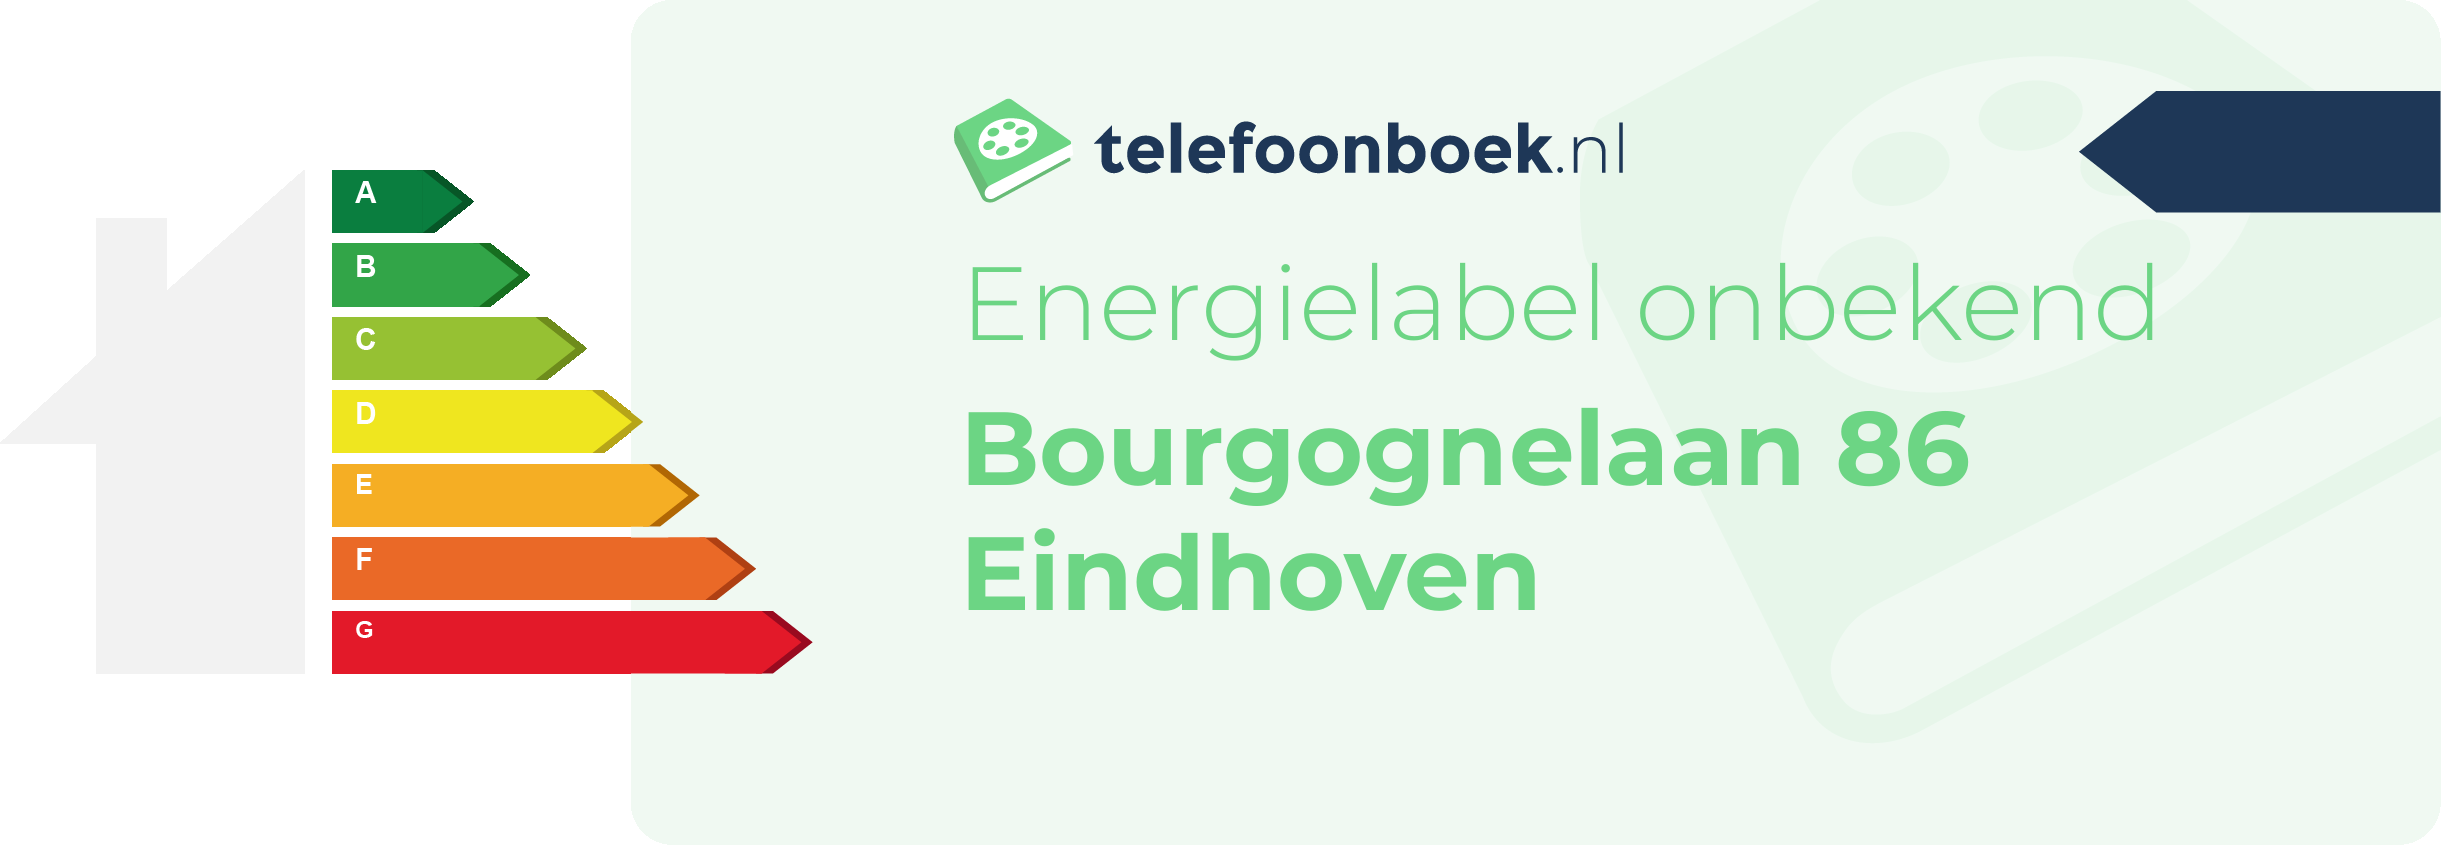 Energielabel Bourgognelaan 86 Eindhoven